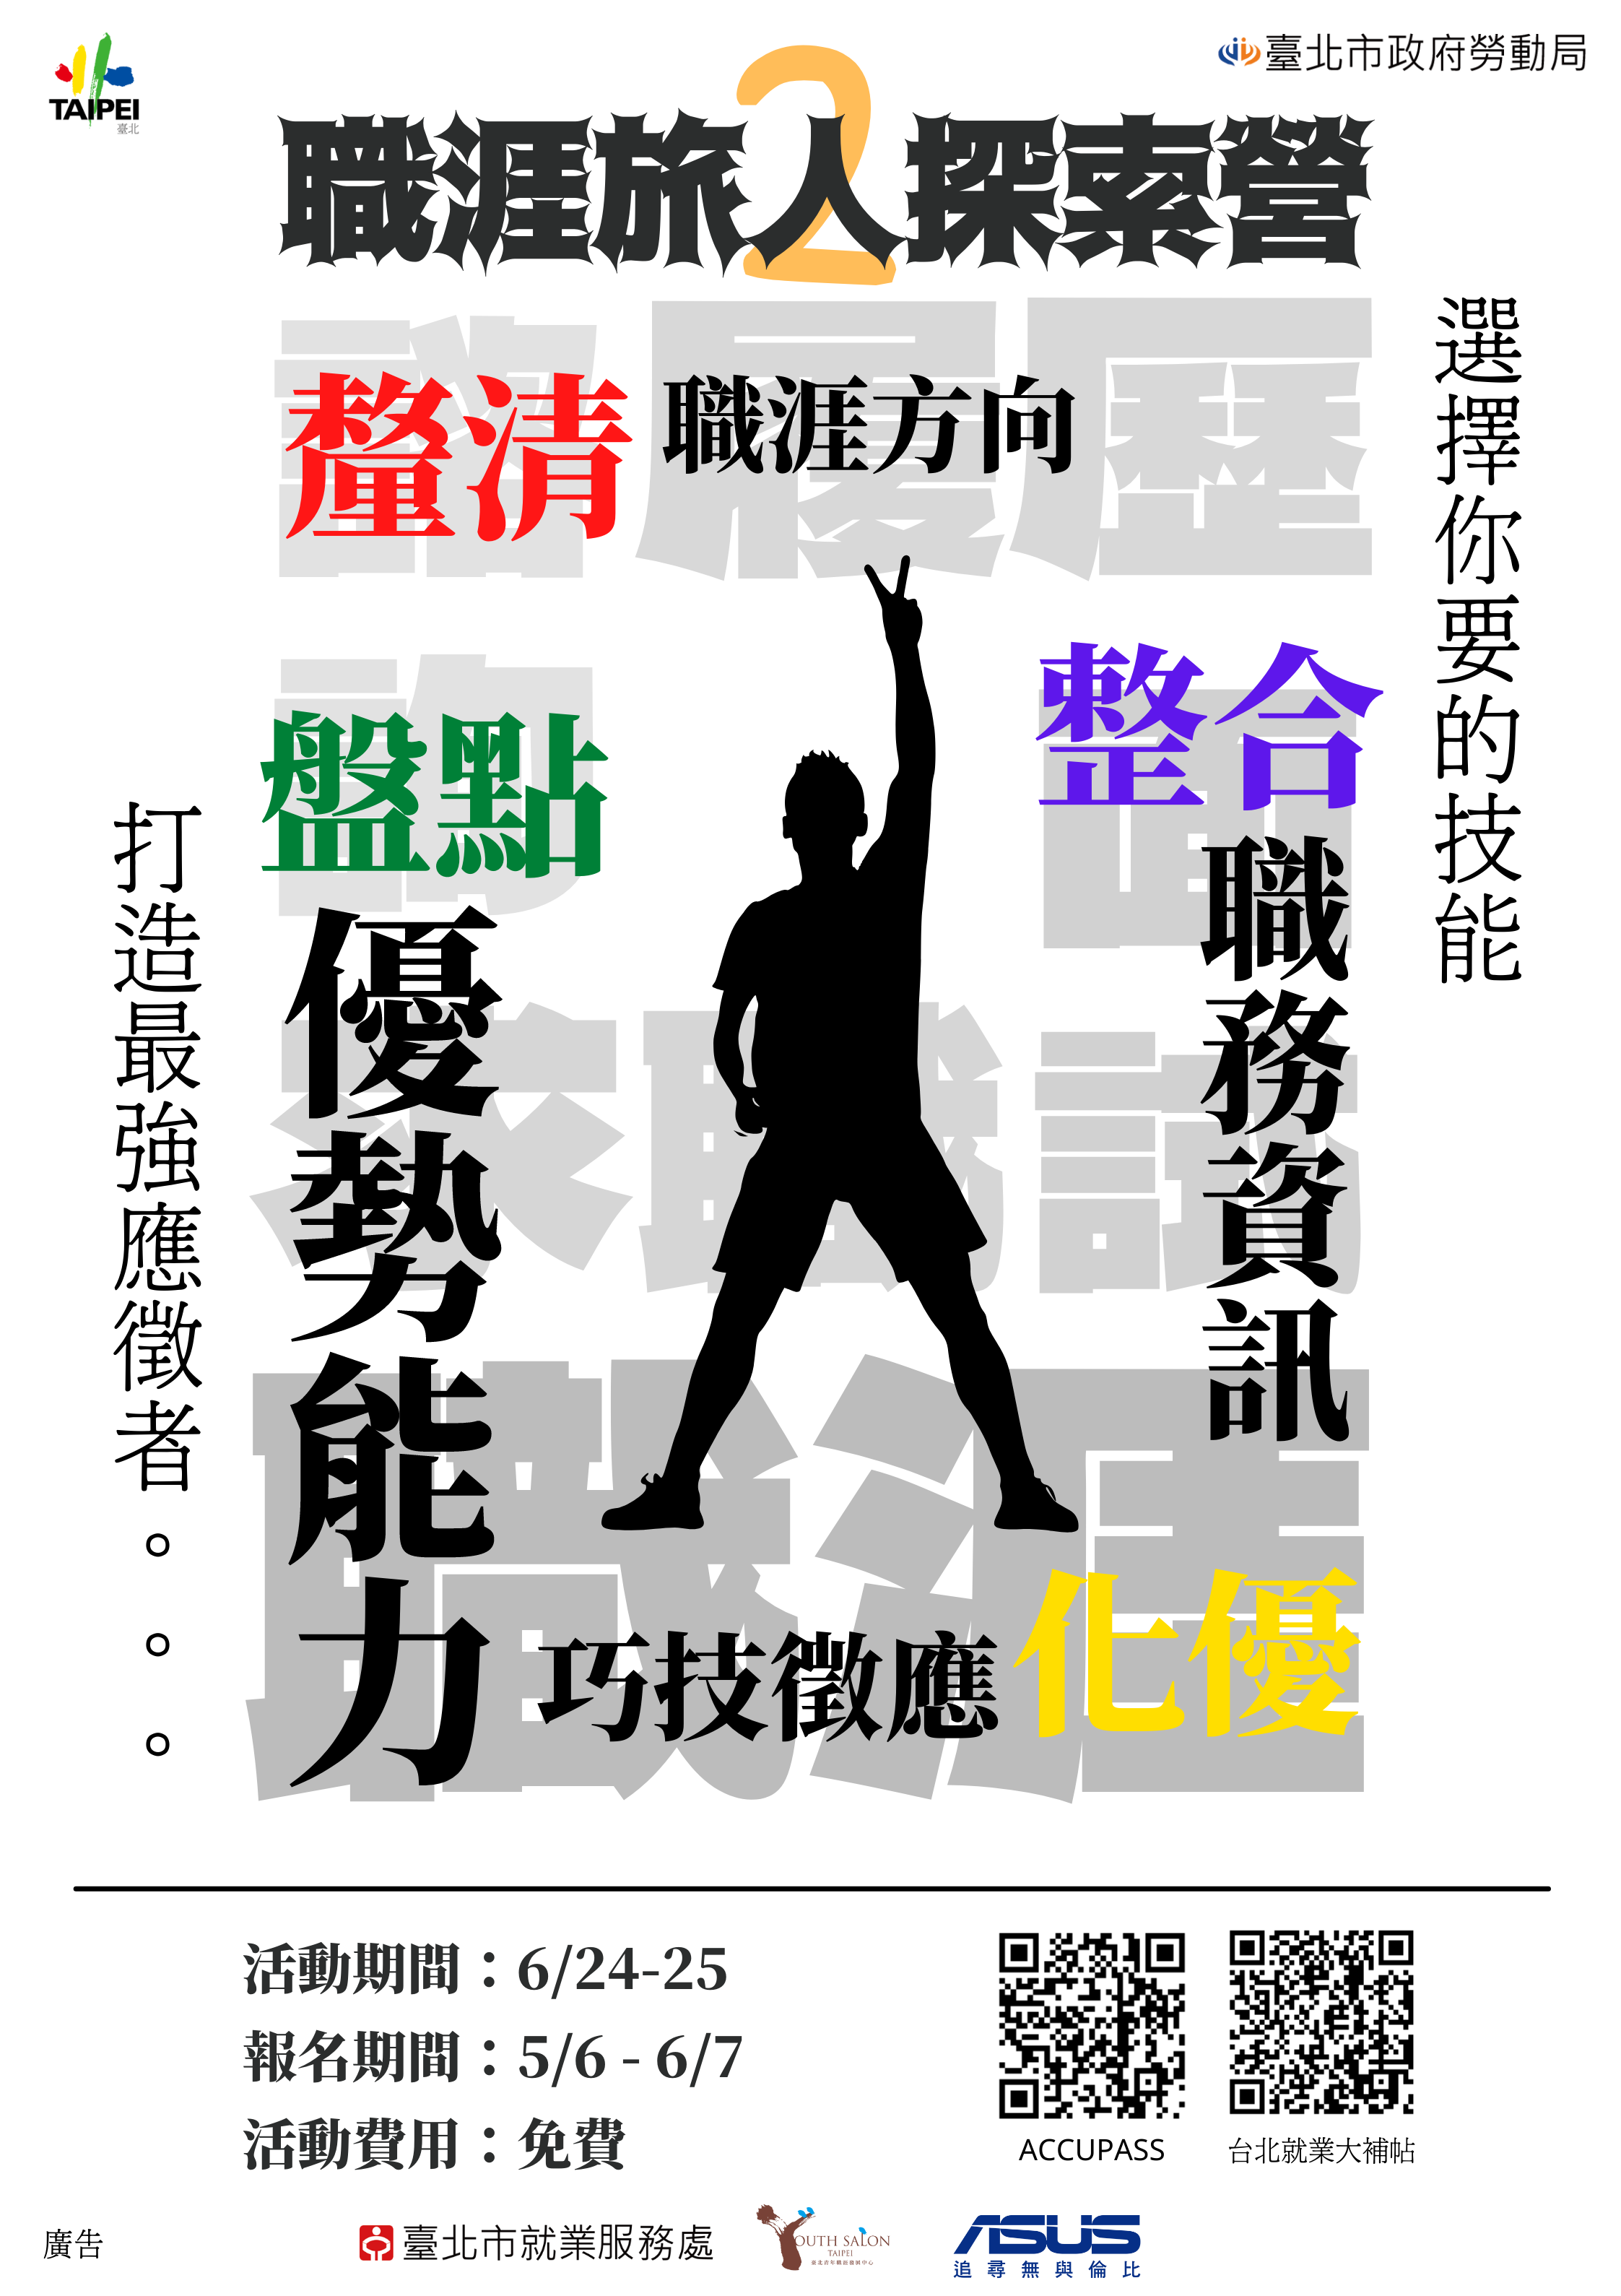 臺北青年職涯發展中心今夏第2場職涯旅人探索營報名開跑